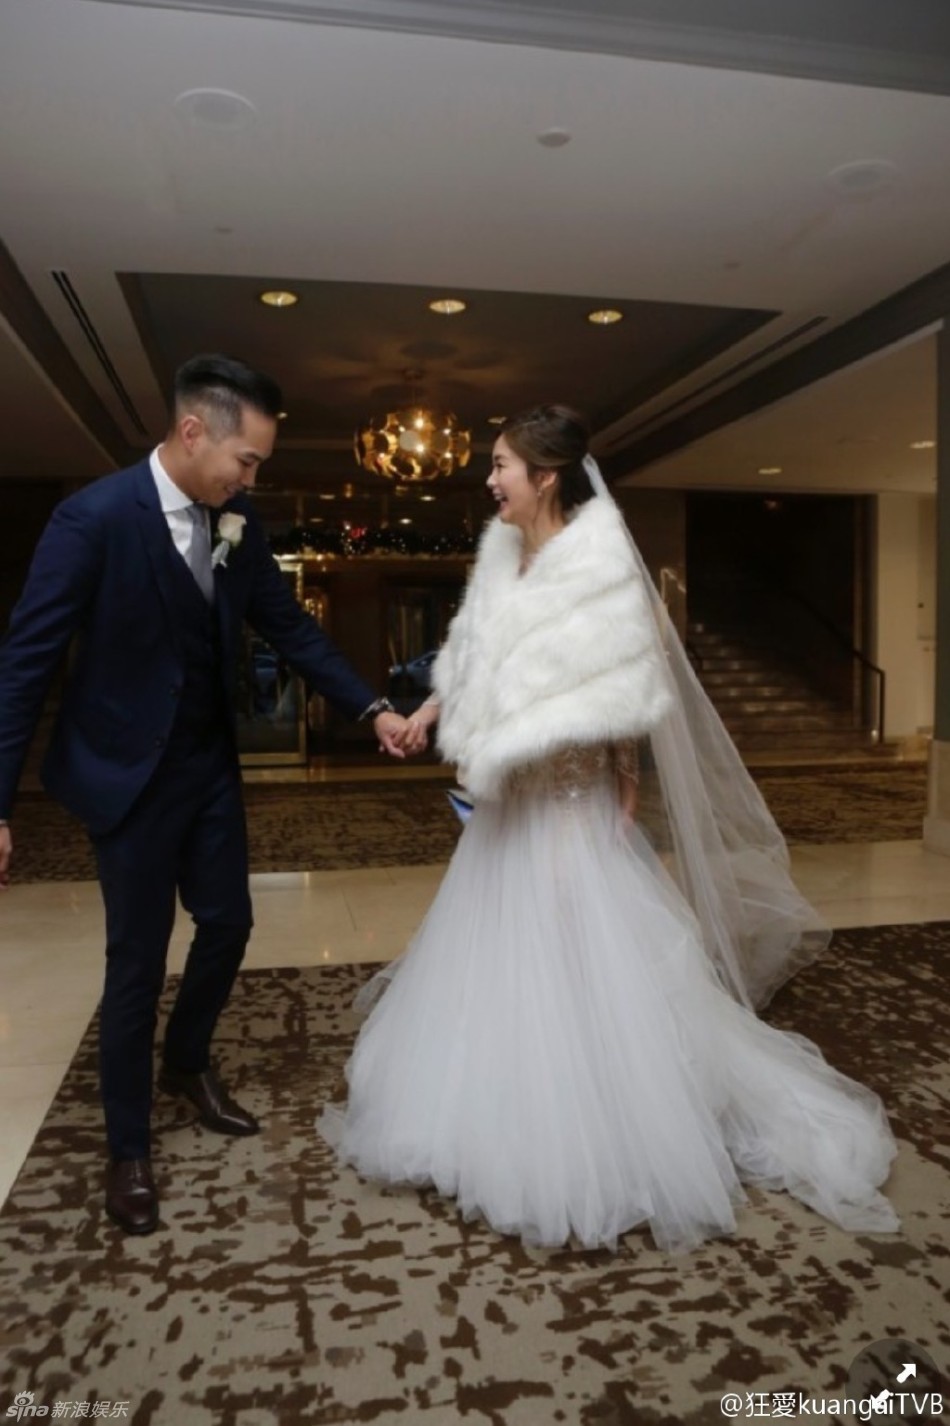 TVB艺人岑丽香温哥华举行婚礼 与丈夫十指紧扣 岑丽香个人资料